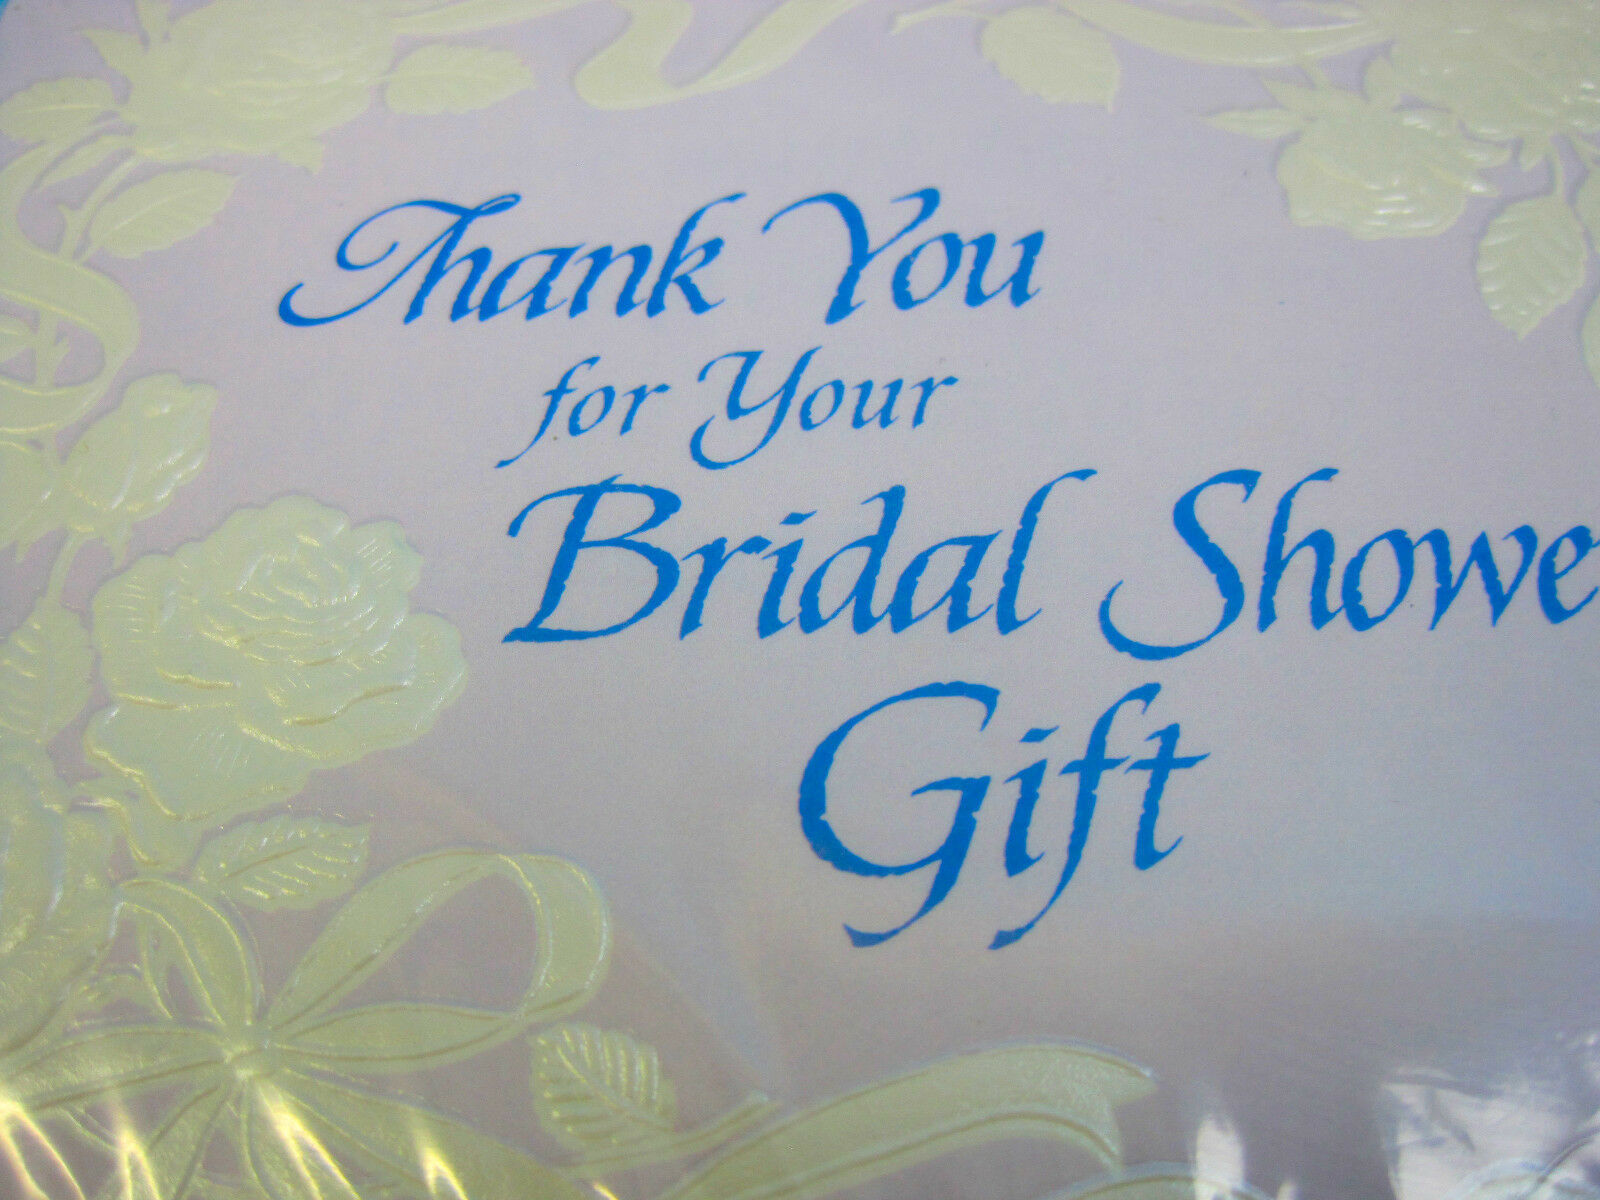 Details about   "Thank You for Bridal Shower Gift" Cards & Envelopes Floral Design 10 Pack 